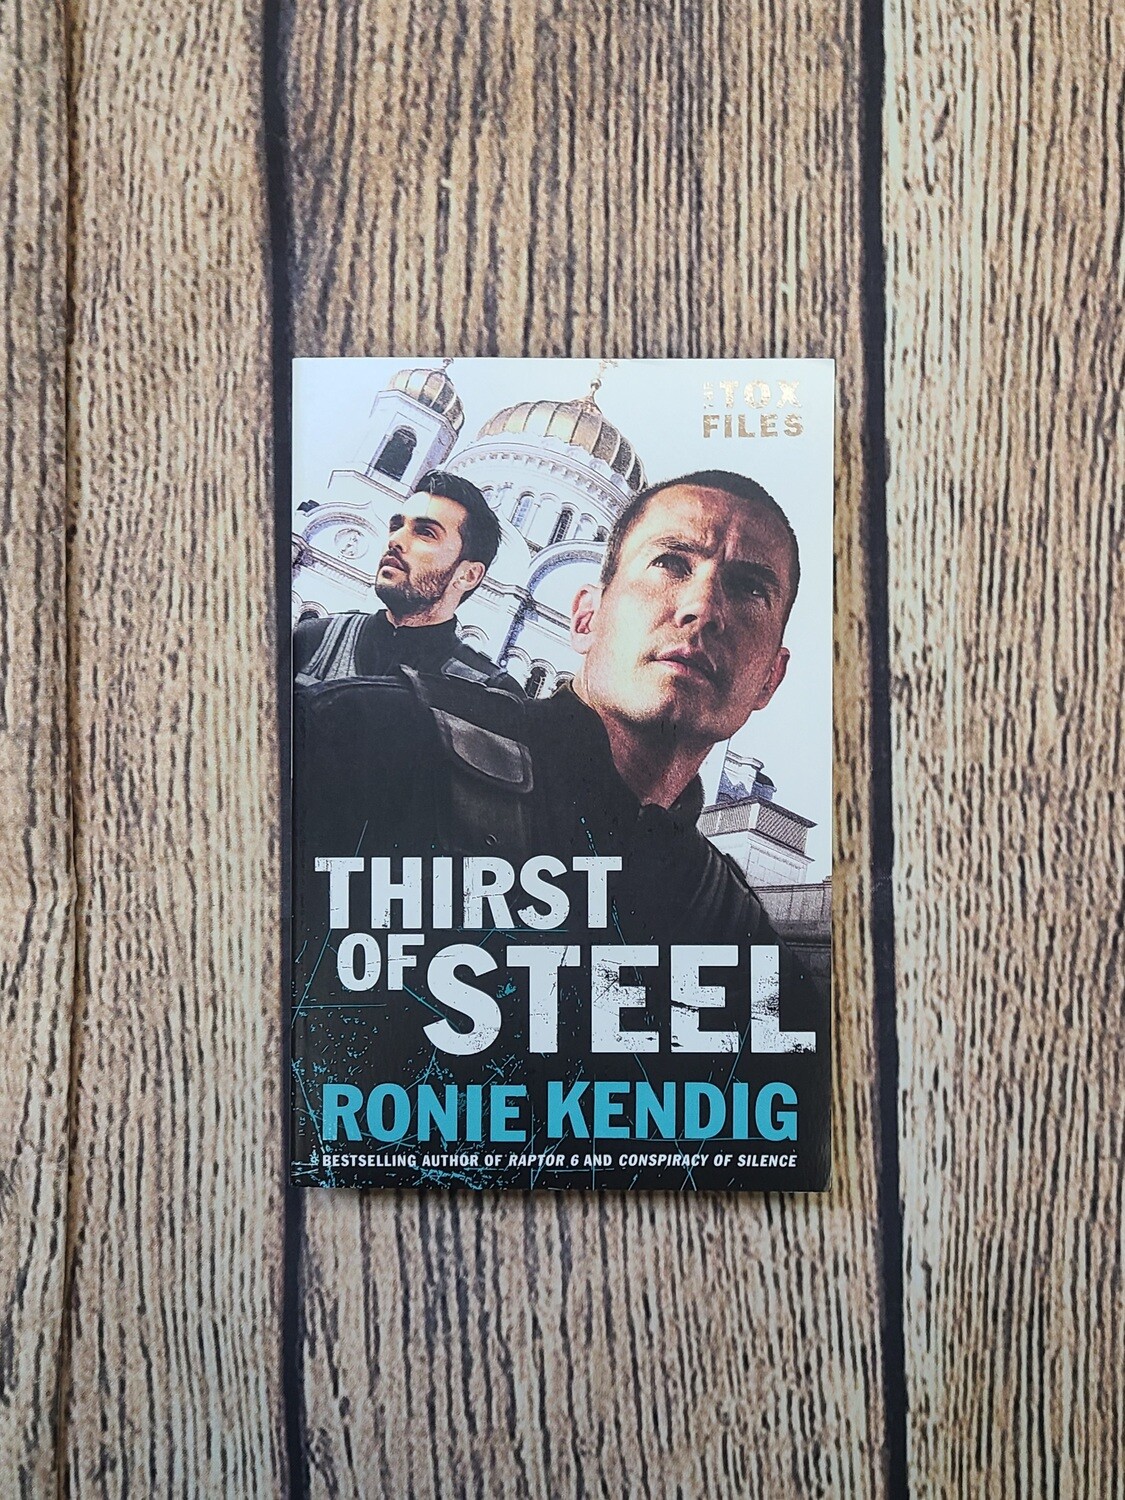 Thirst of Steel by Ronie Kendig